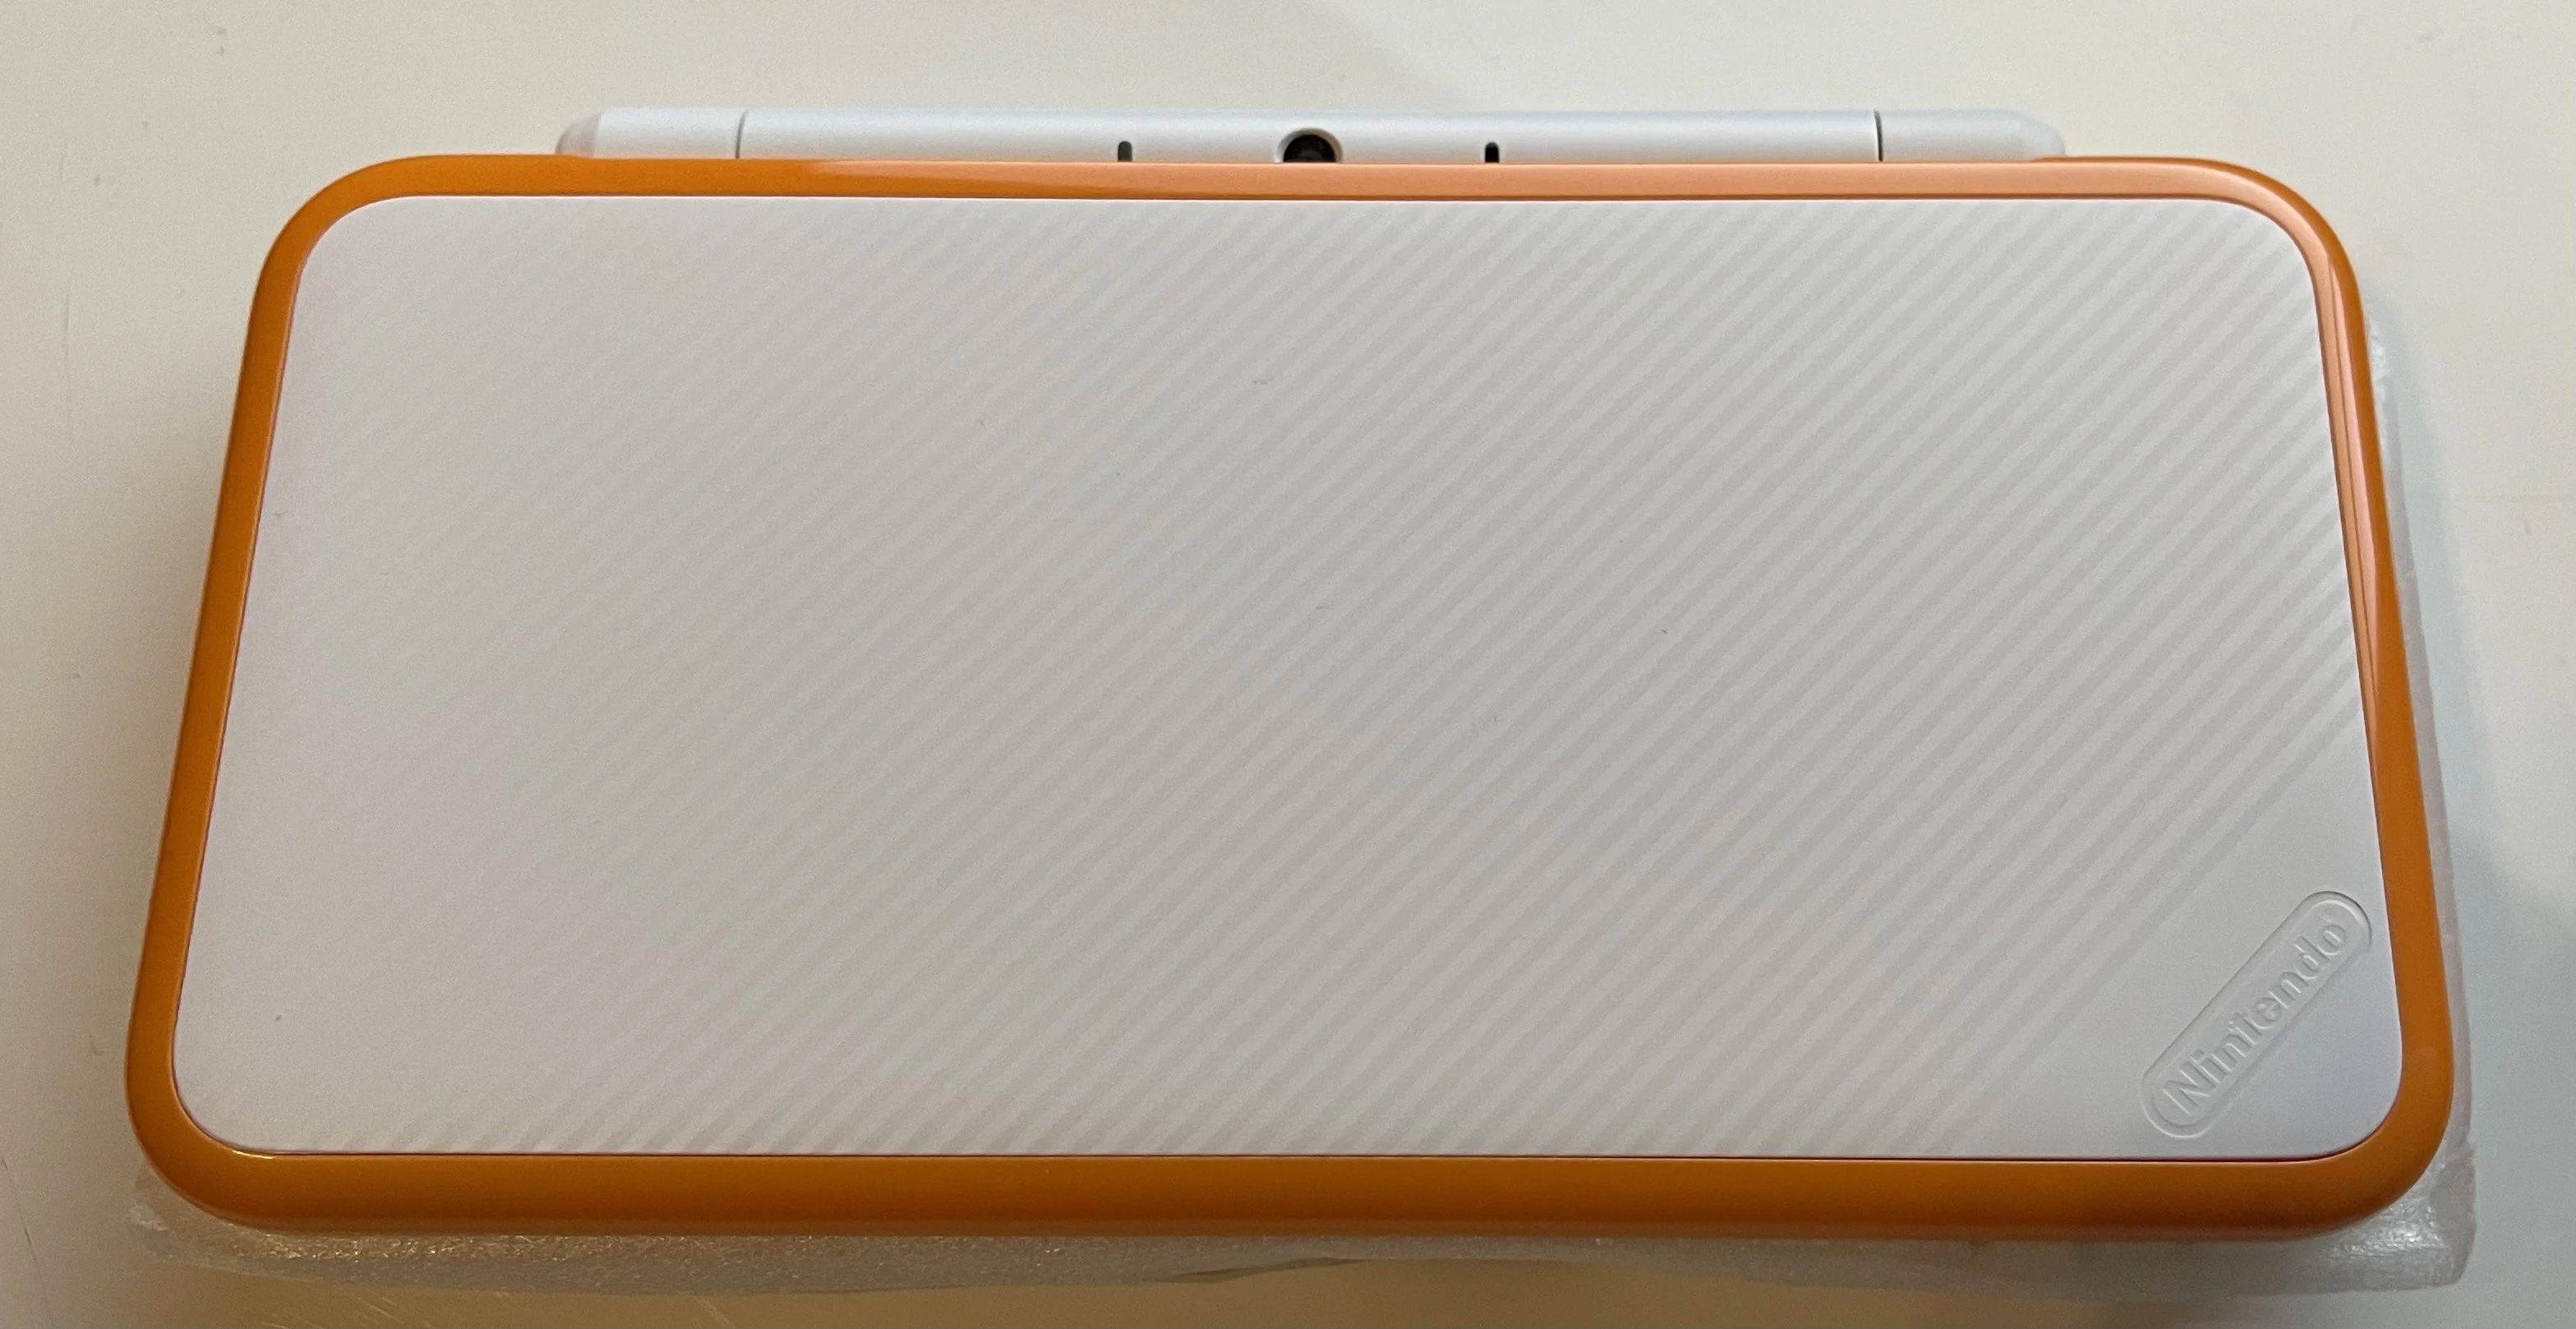  New Nintendo 2DS XL Orange/White Development unit